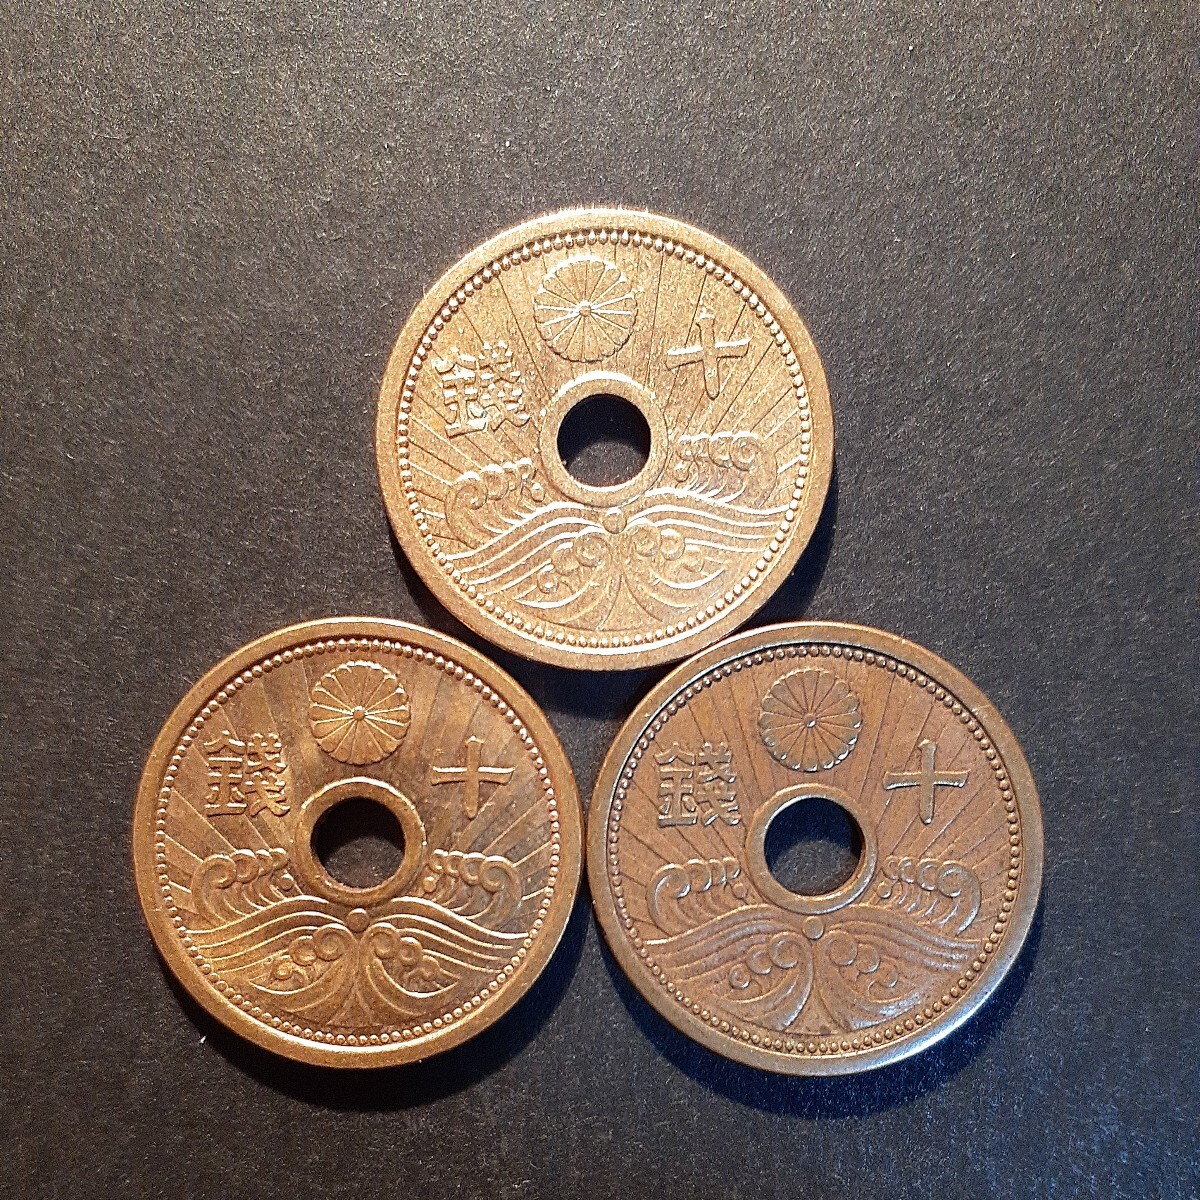 5銭アルミ青銅貨 10銭アルミ青銅貨 全年号コンプリート 昭和13年から昭和15年 6枚まとめて